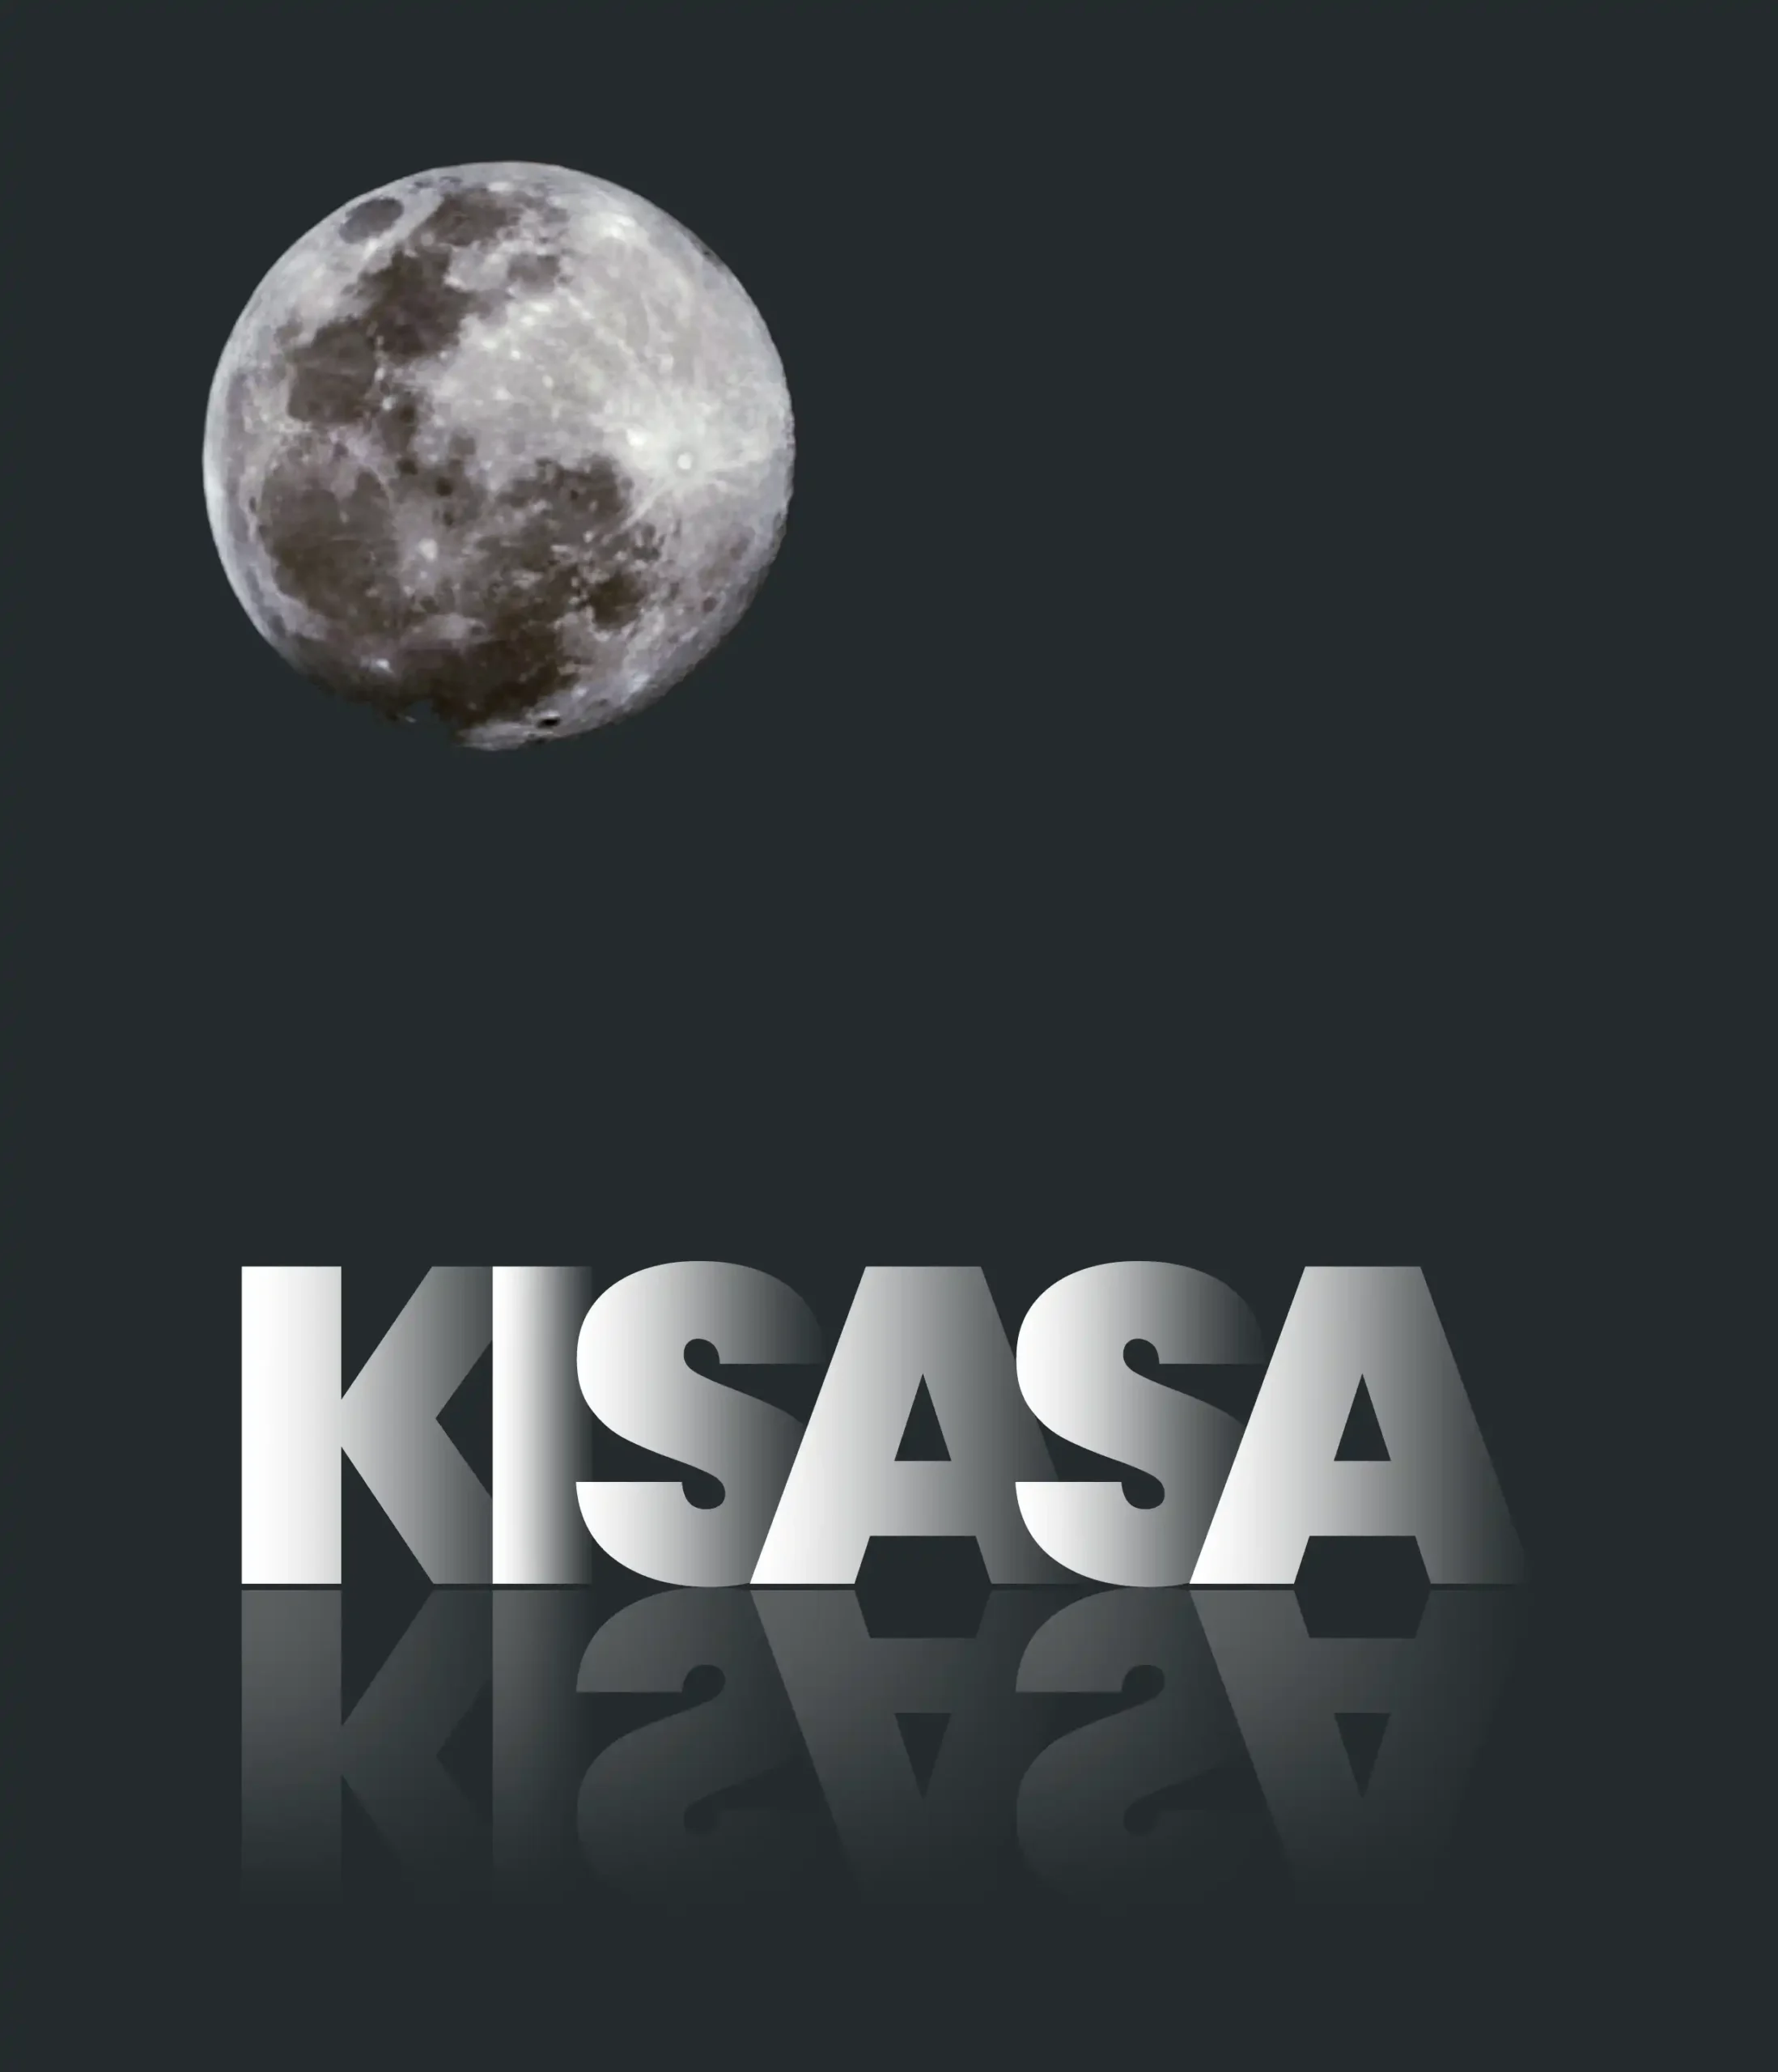 Kisasa Moon